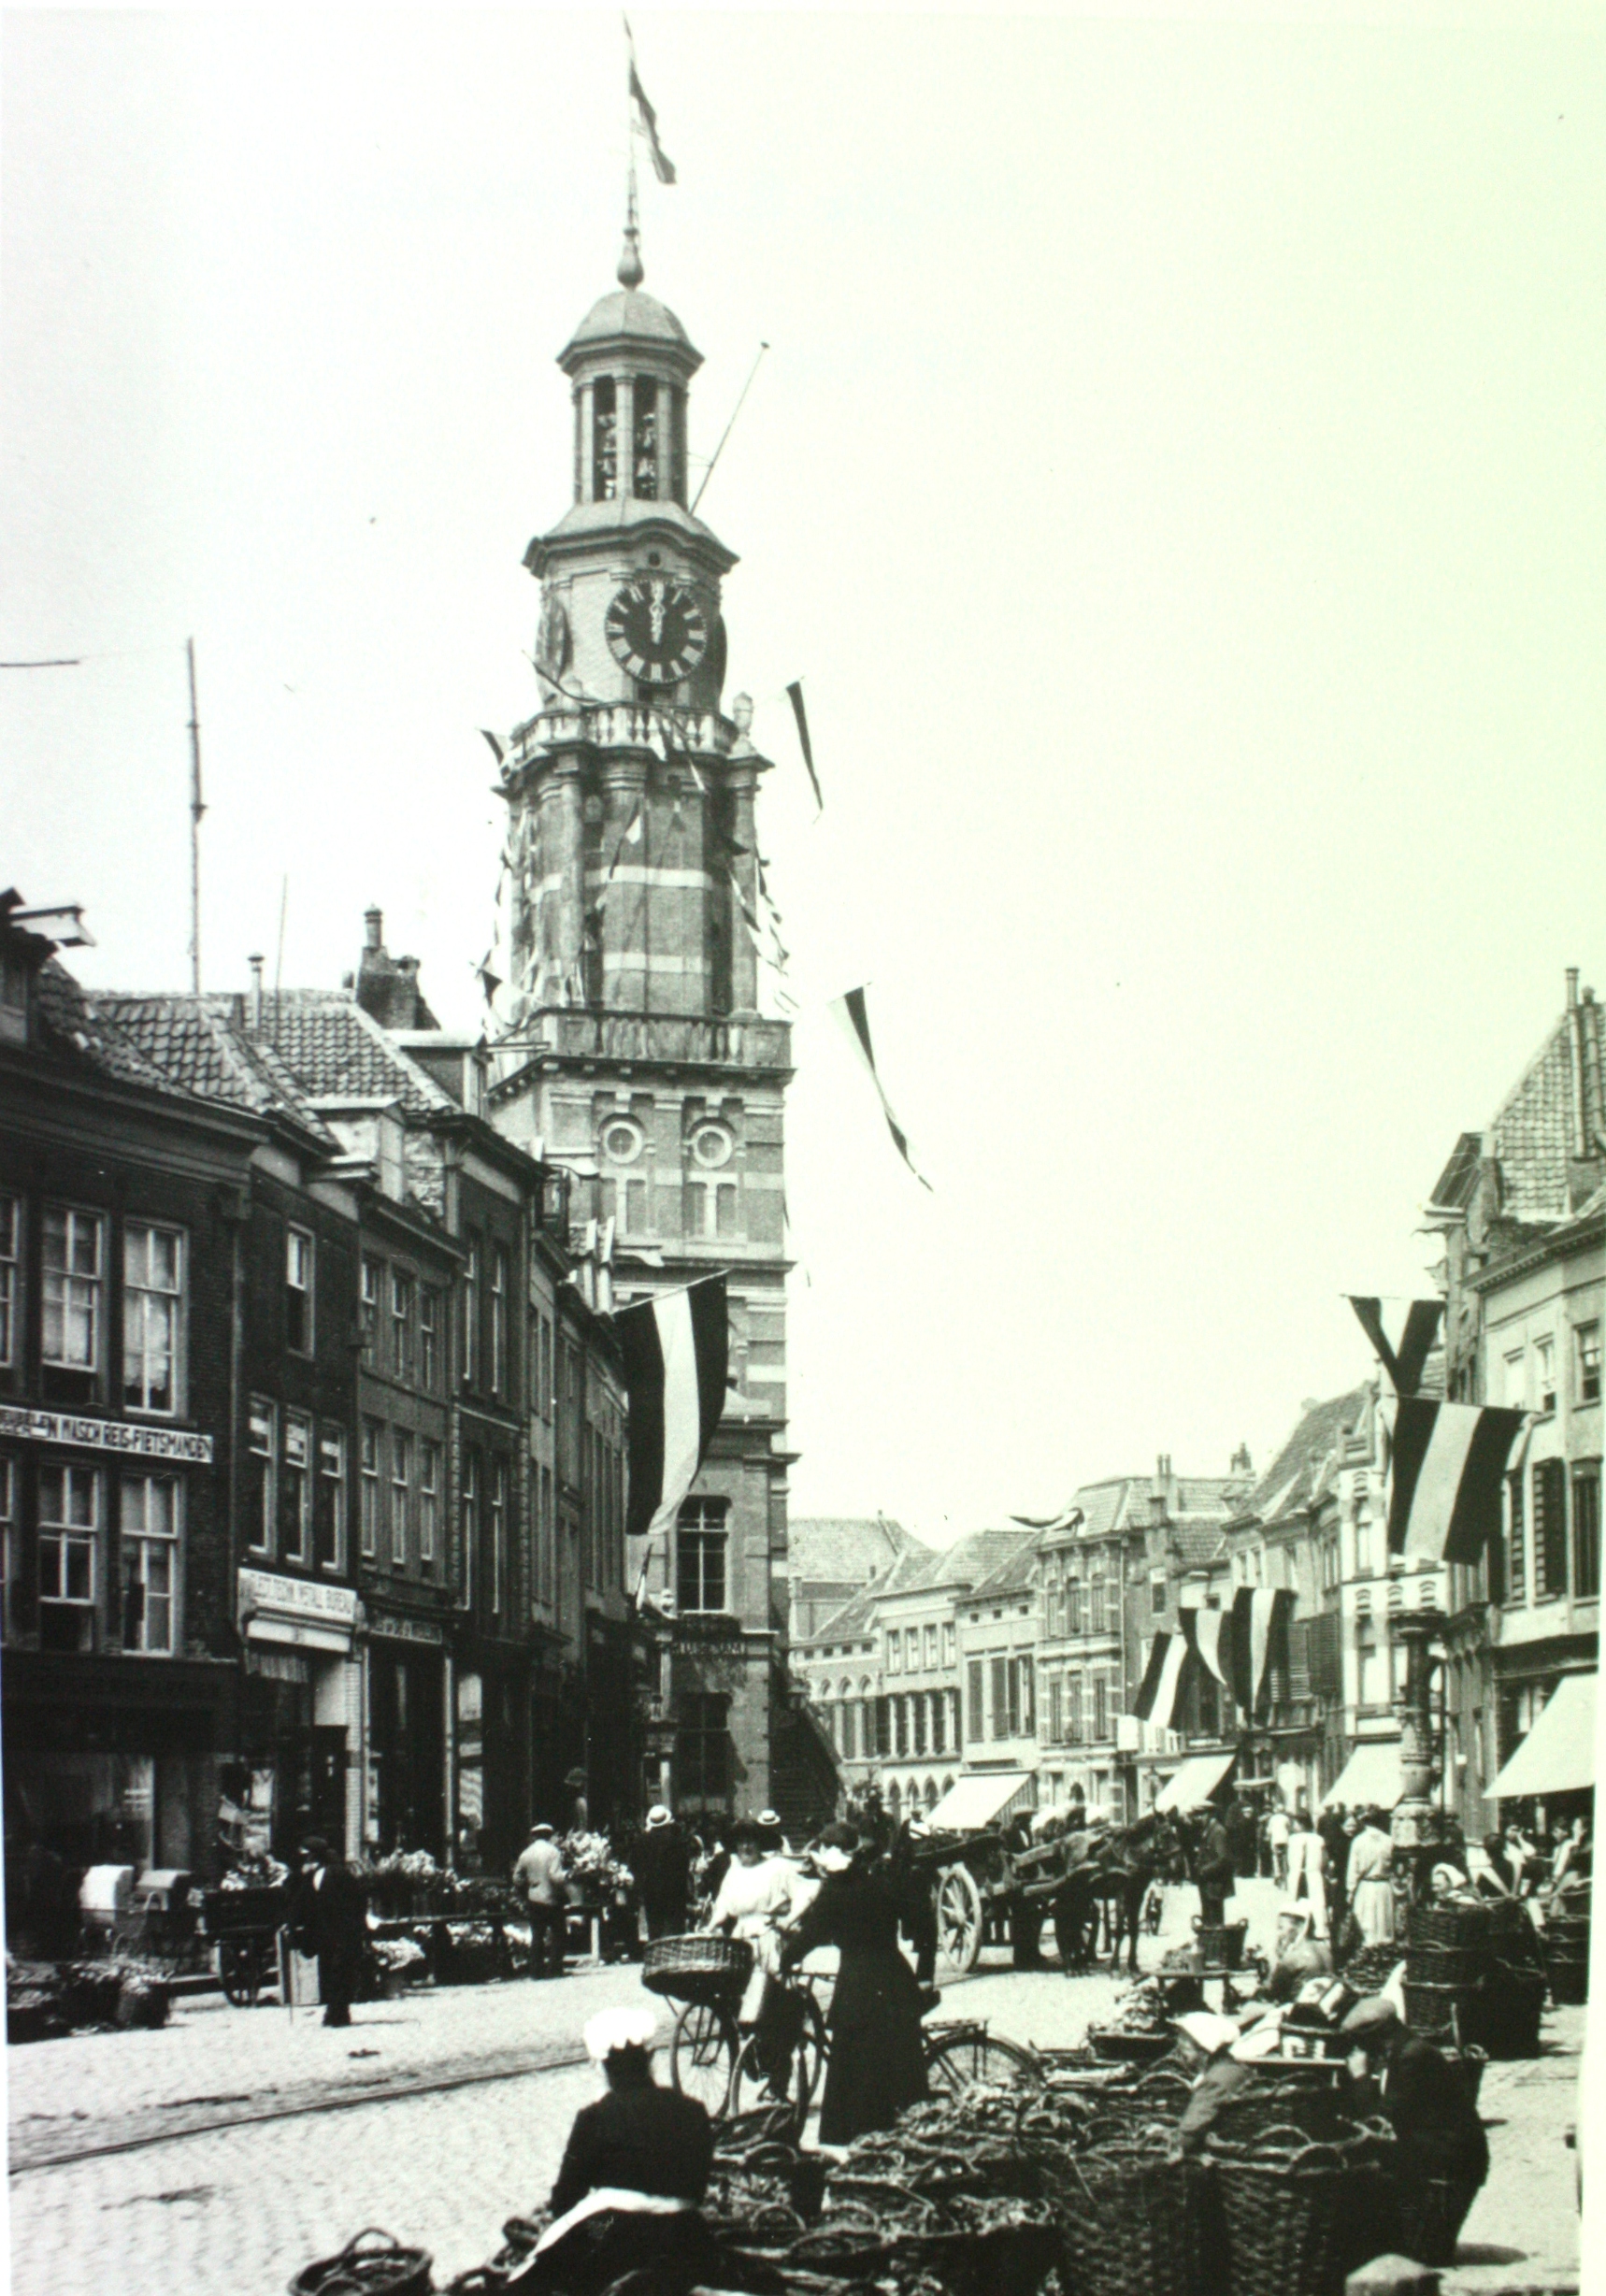 Lein de Nood, Marktdag aan de Houtmarkt, 1924